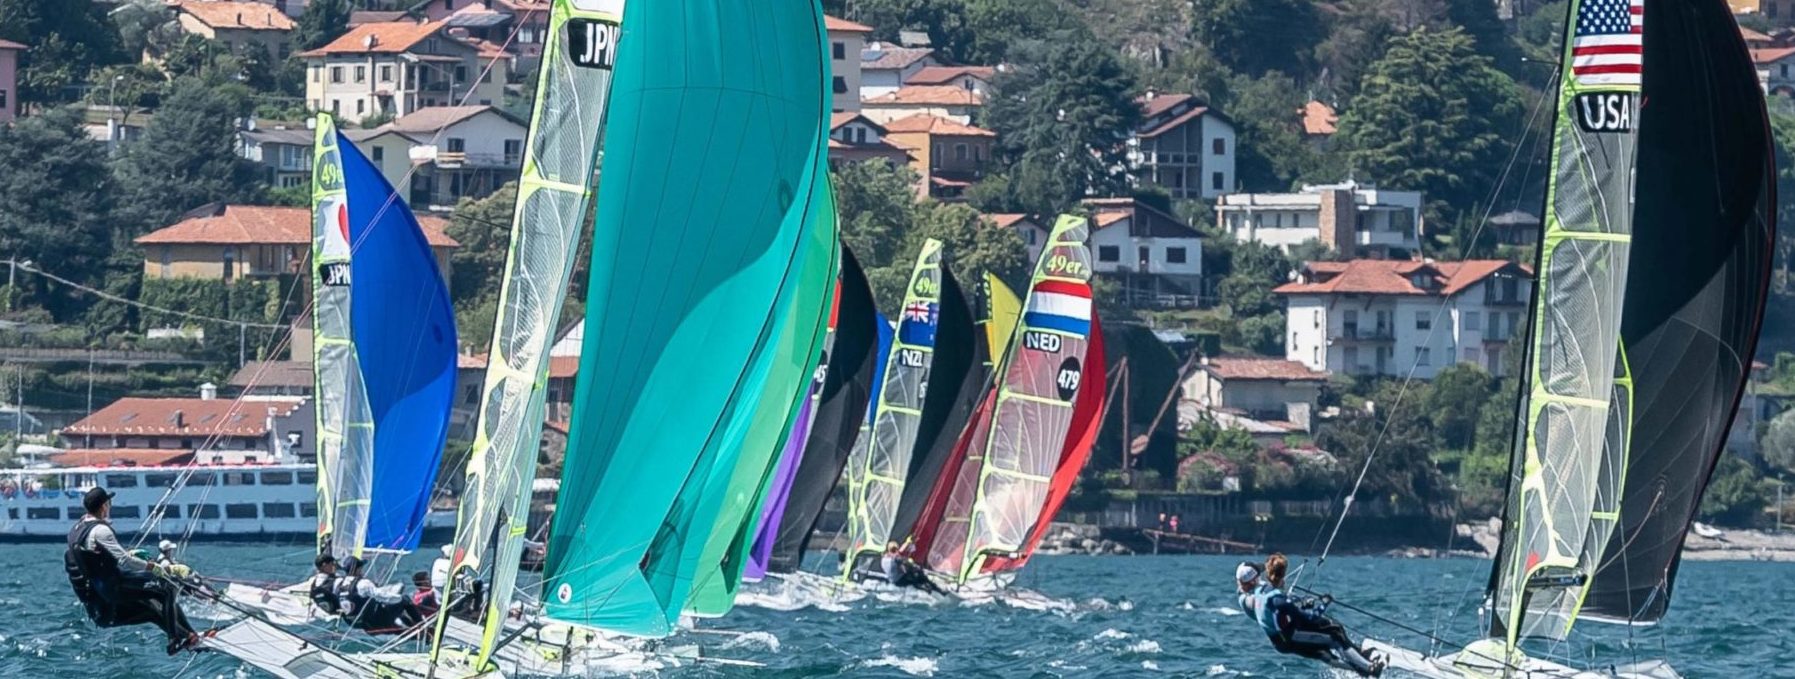 Olimpiai hajóosztályok versenyeznek Balatonfüreden Fotó: Renato Tebaldi / 49er, 49er(FX), Nacra17 Junior Worlds 2022